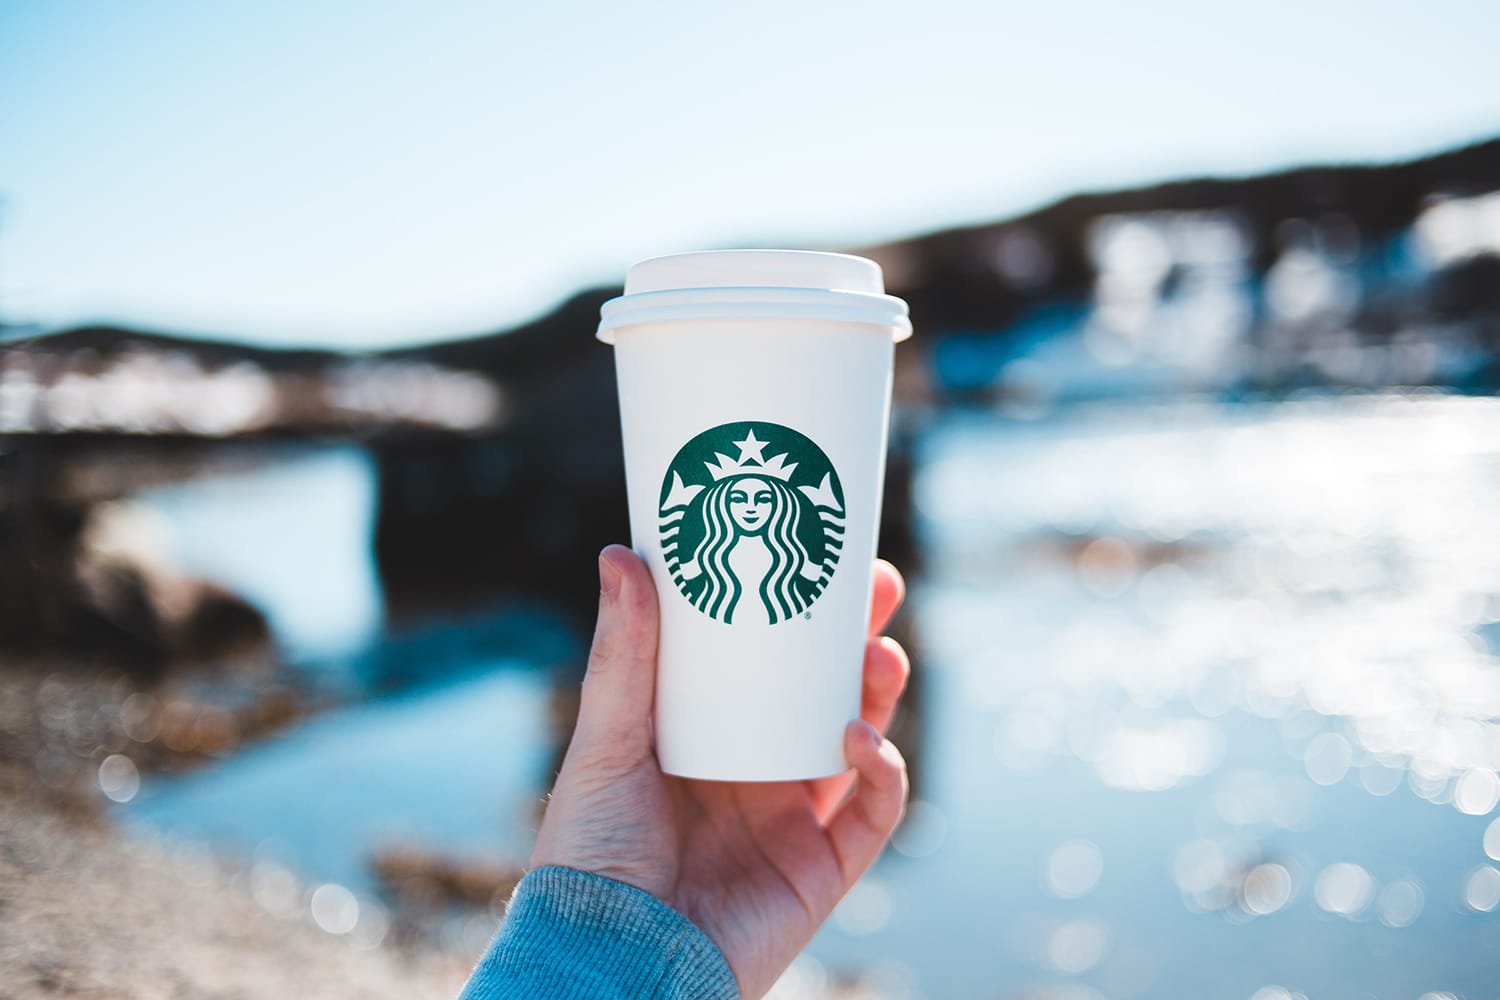 Starbucks Cup Sizes (Explained): Grande, Venti, etc.